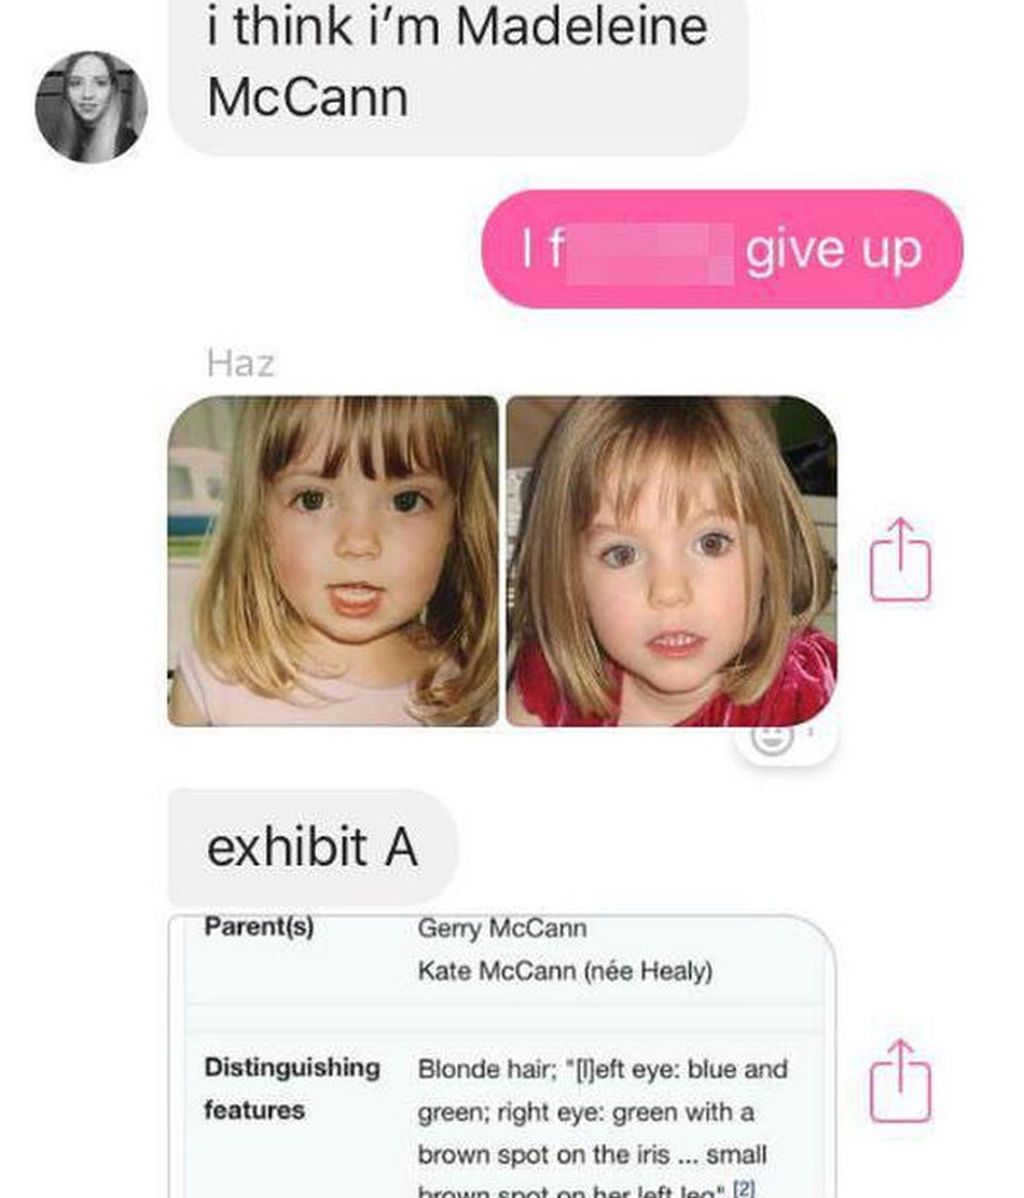 La desagradable broma de una joven: "Soy Madeleine McCann"